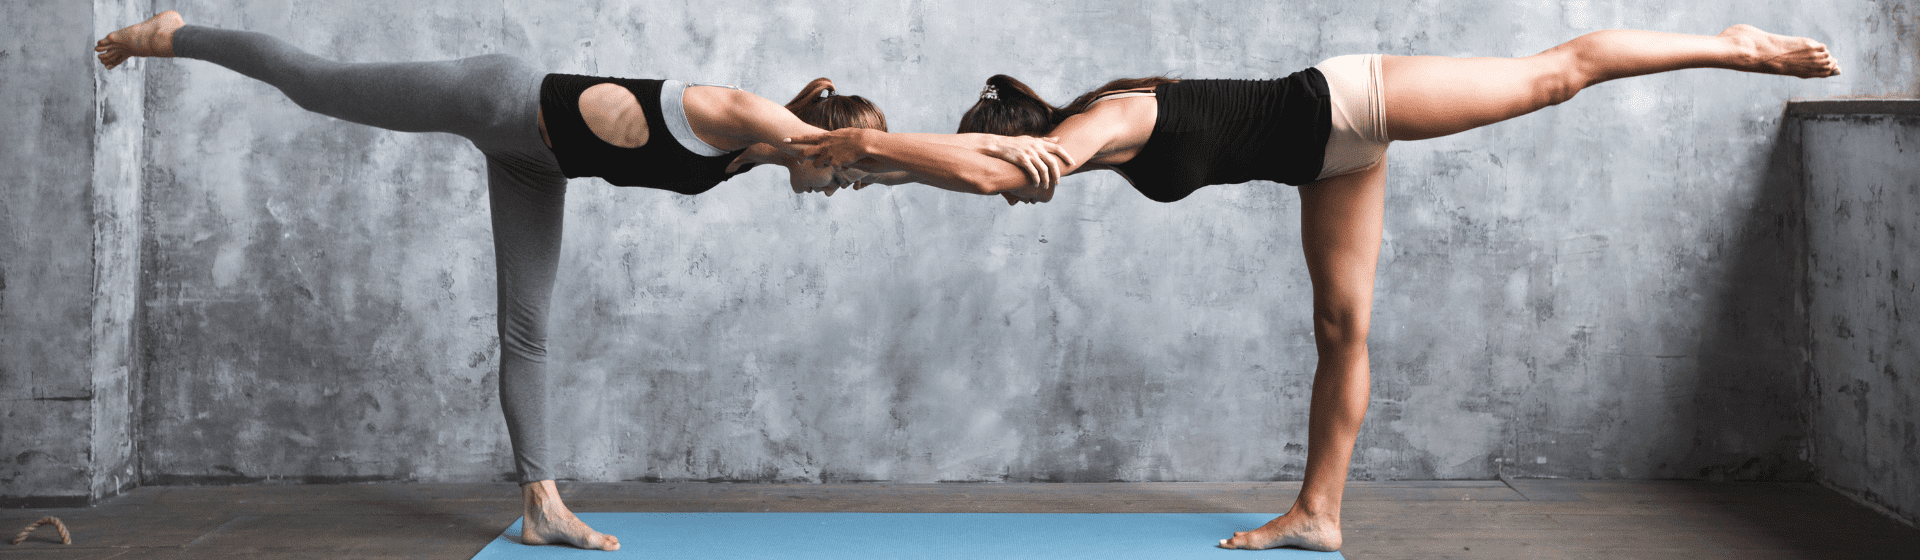 Capa do post: Yoga em dupla: 5 posturas de yoga para praticar em dupla